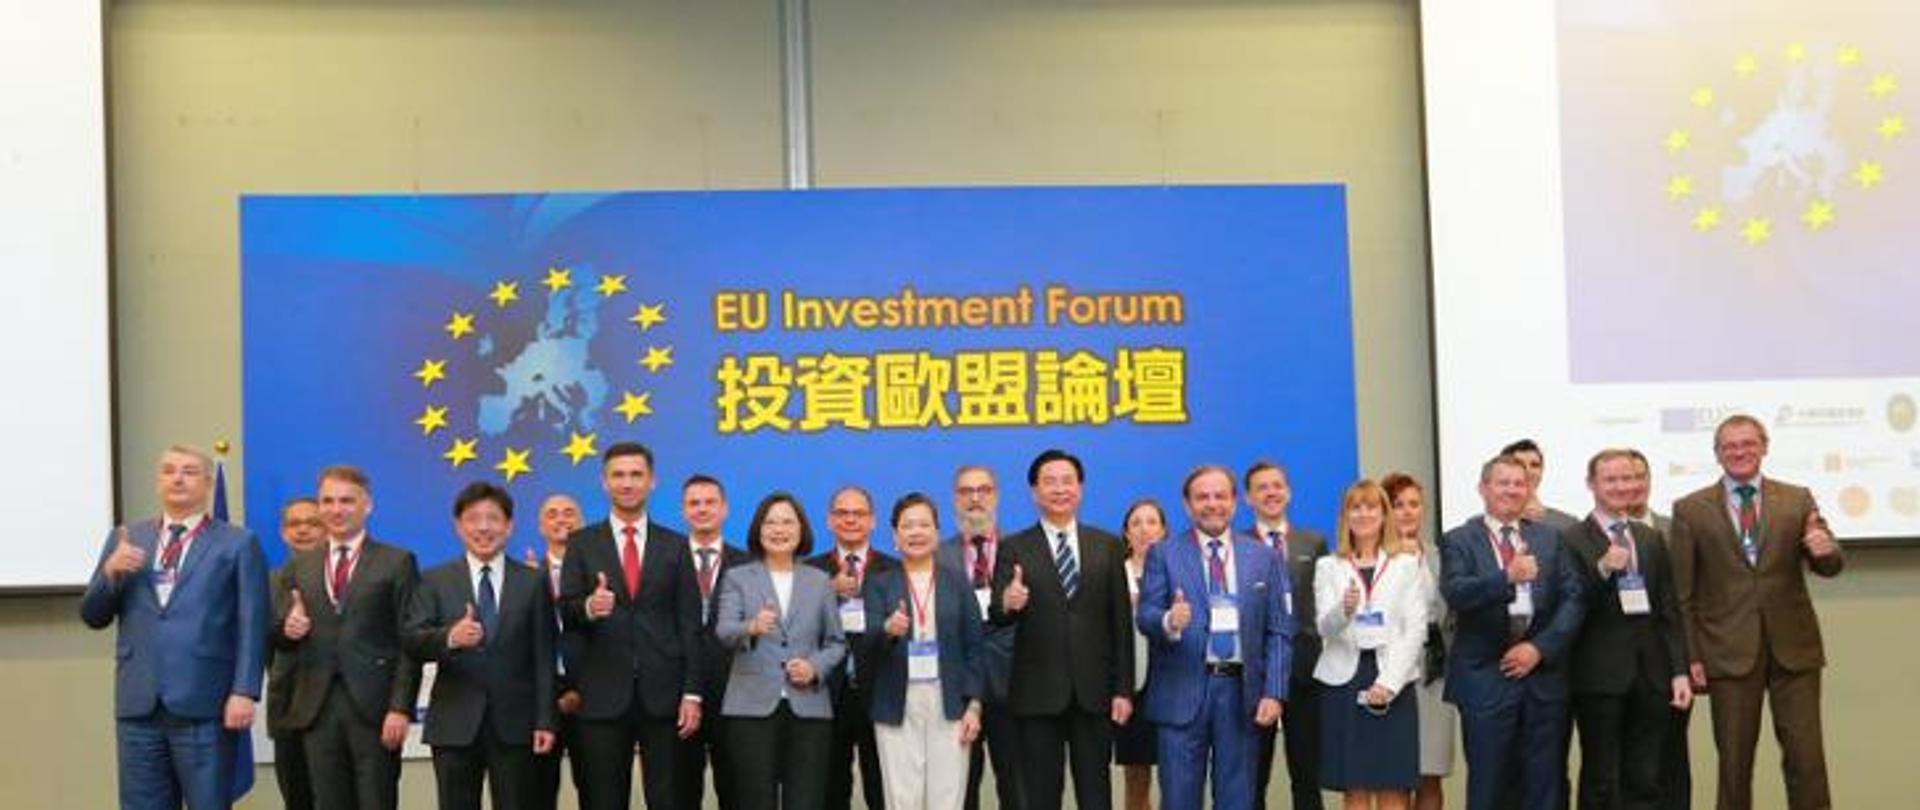 EU Investment Forum 